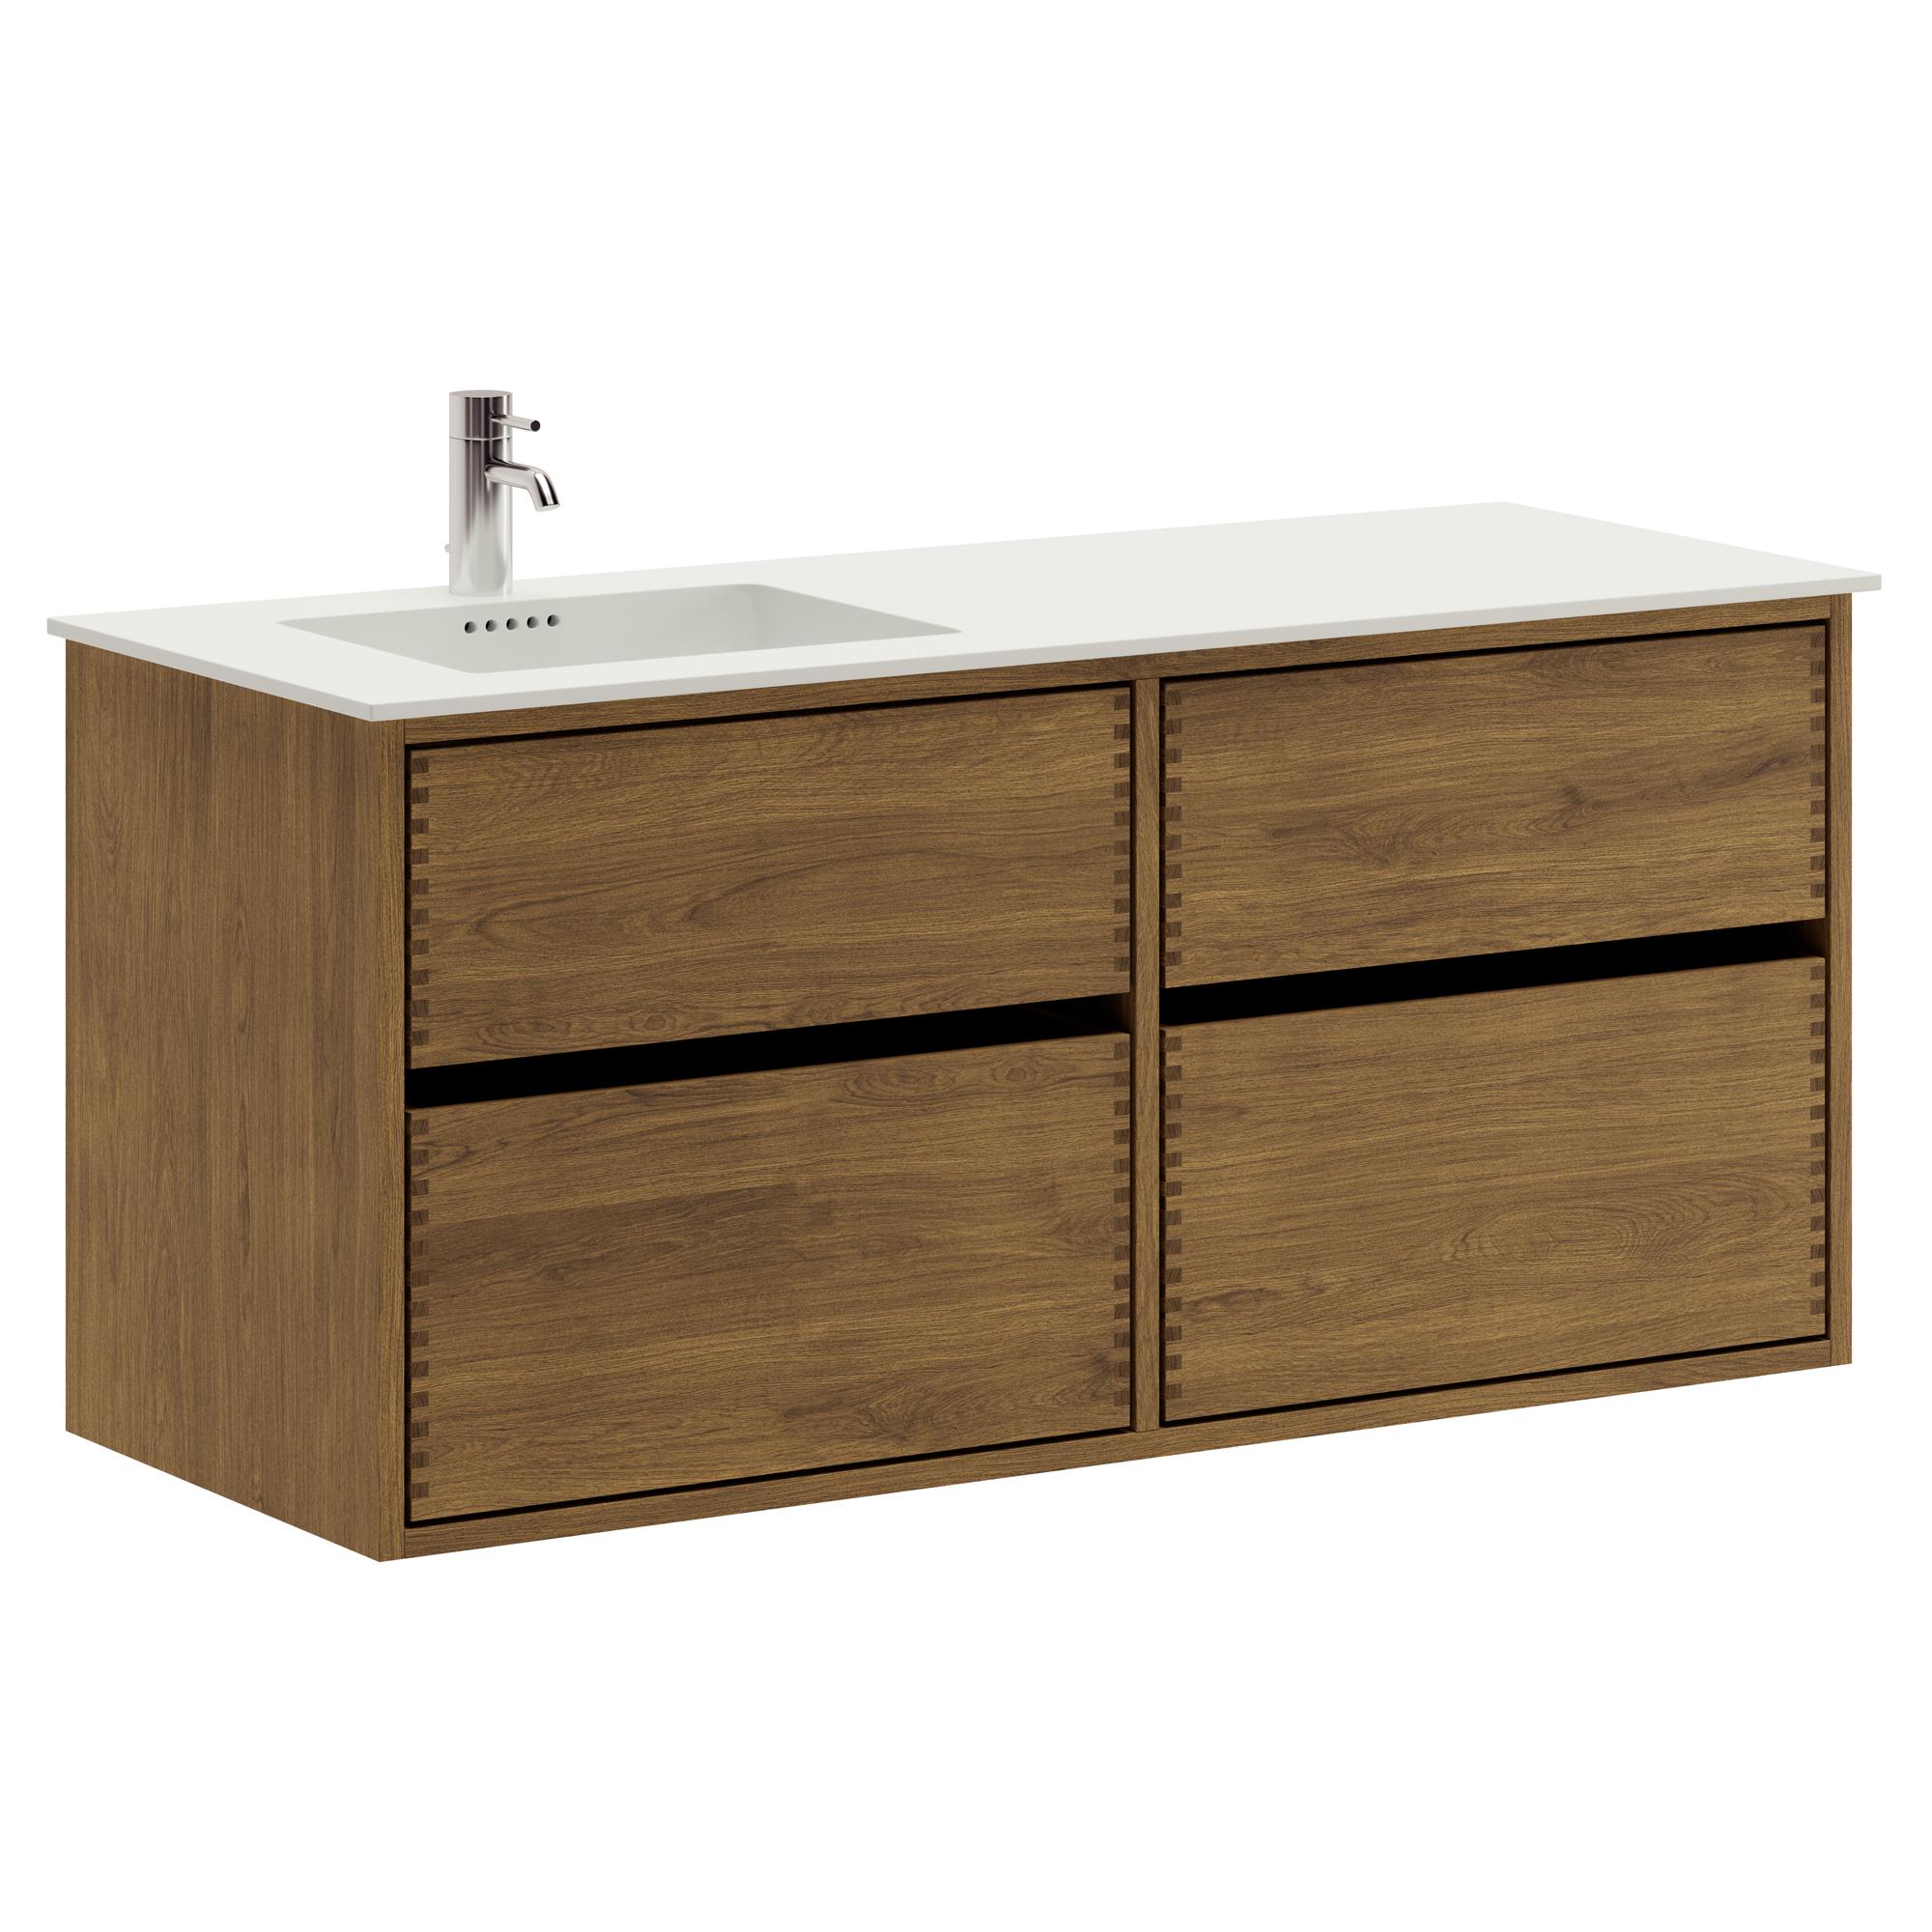 120 cm dunkel-geölter Just Wood Original-Badezimmermöbel mit 4 Schubladen und Solid Surface-Waschbecken - Links